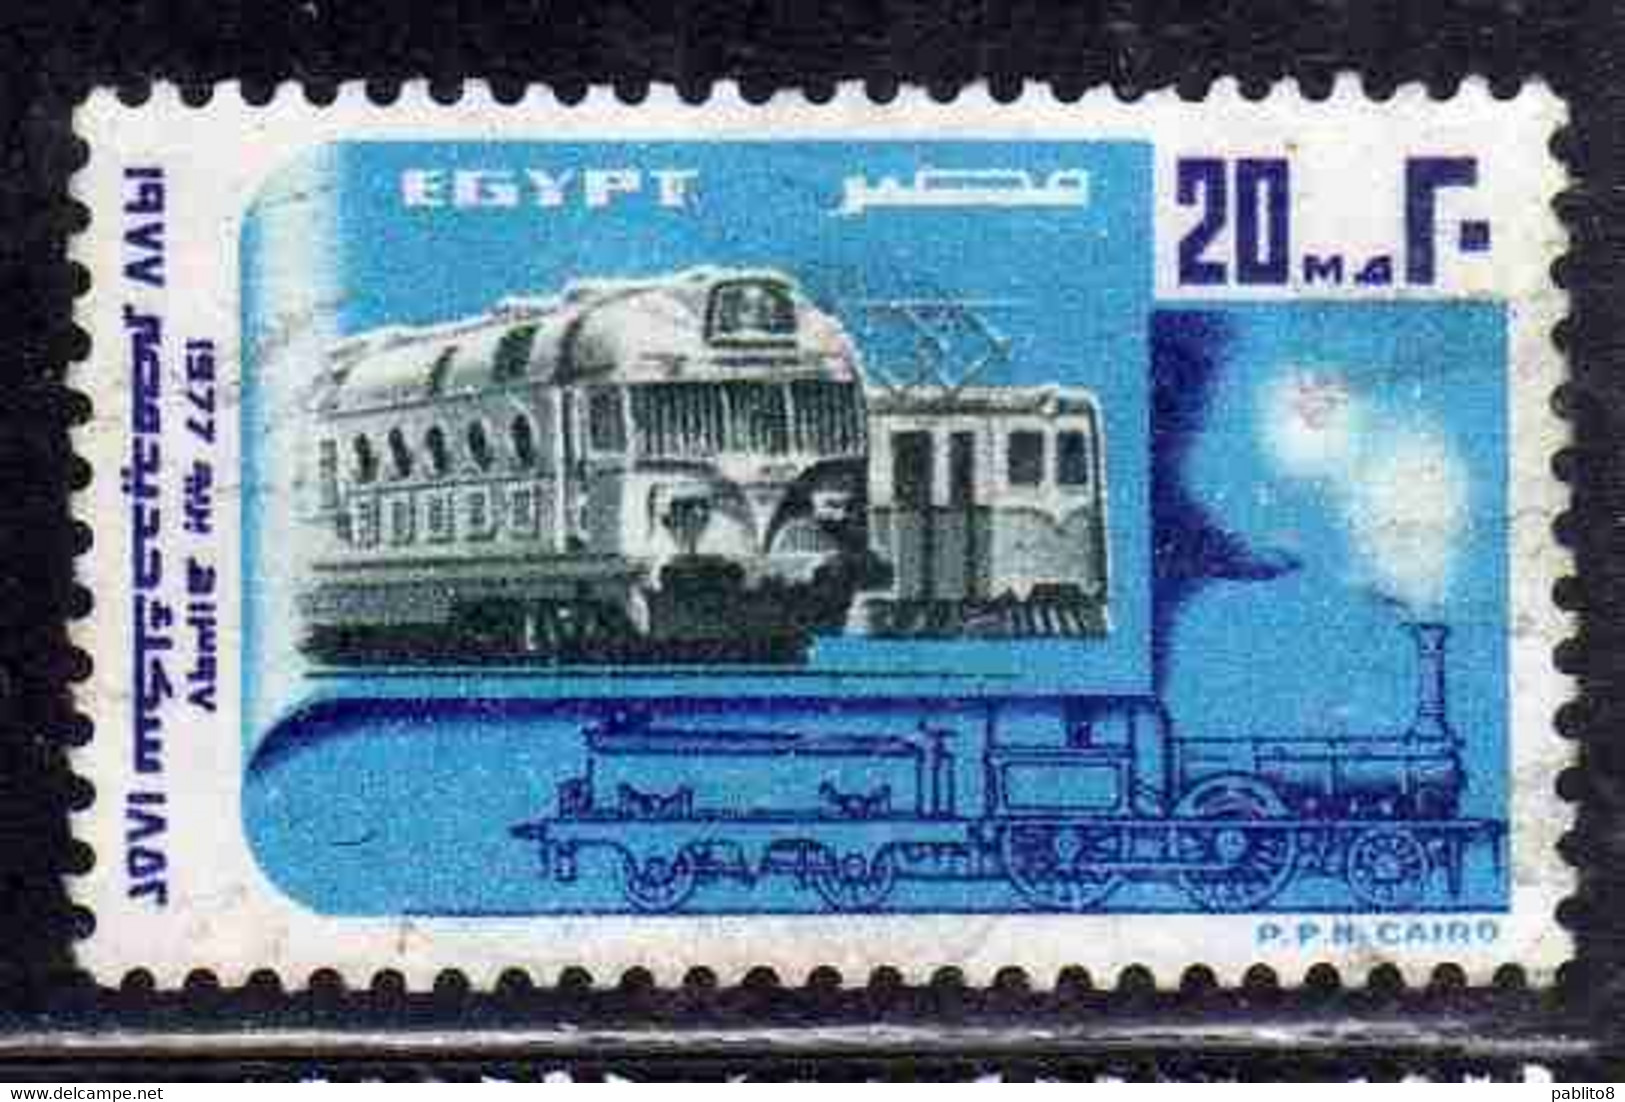 UAR EGYPT EGITTO 1977 EGYPTIAN RAILROADS ELECTRIC TRAINS LOCOMOTIVE 20m USED USATO OBLITERE' - Oblitérés